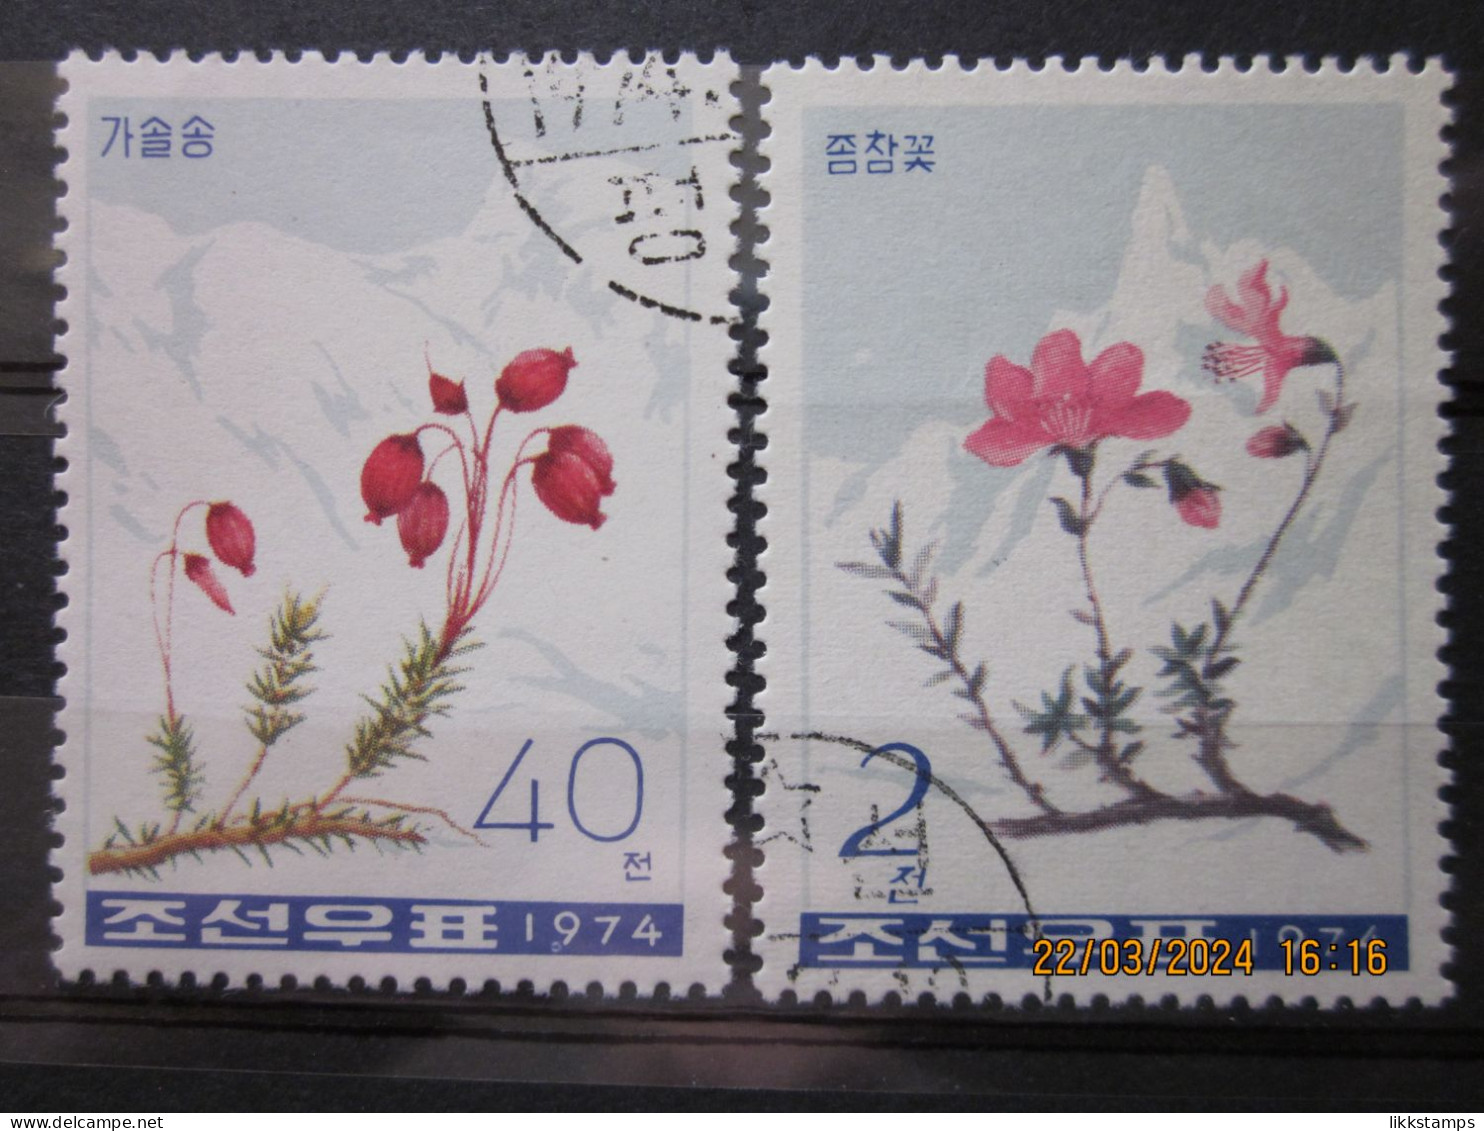 NORTH KOREA ~ 1974 ~ S.G. N1298 + N1302, ~ PLANTS OF MOUNT PAEKDU. ~ VFU #03354 - Corea Del Norte